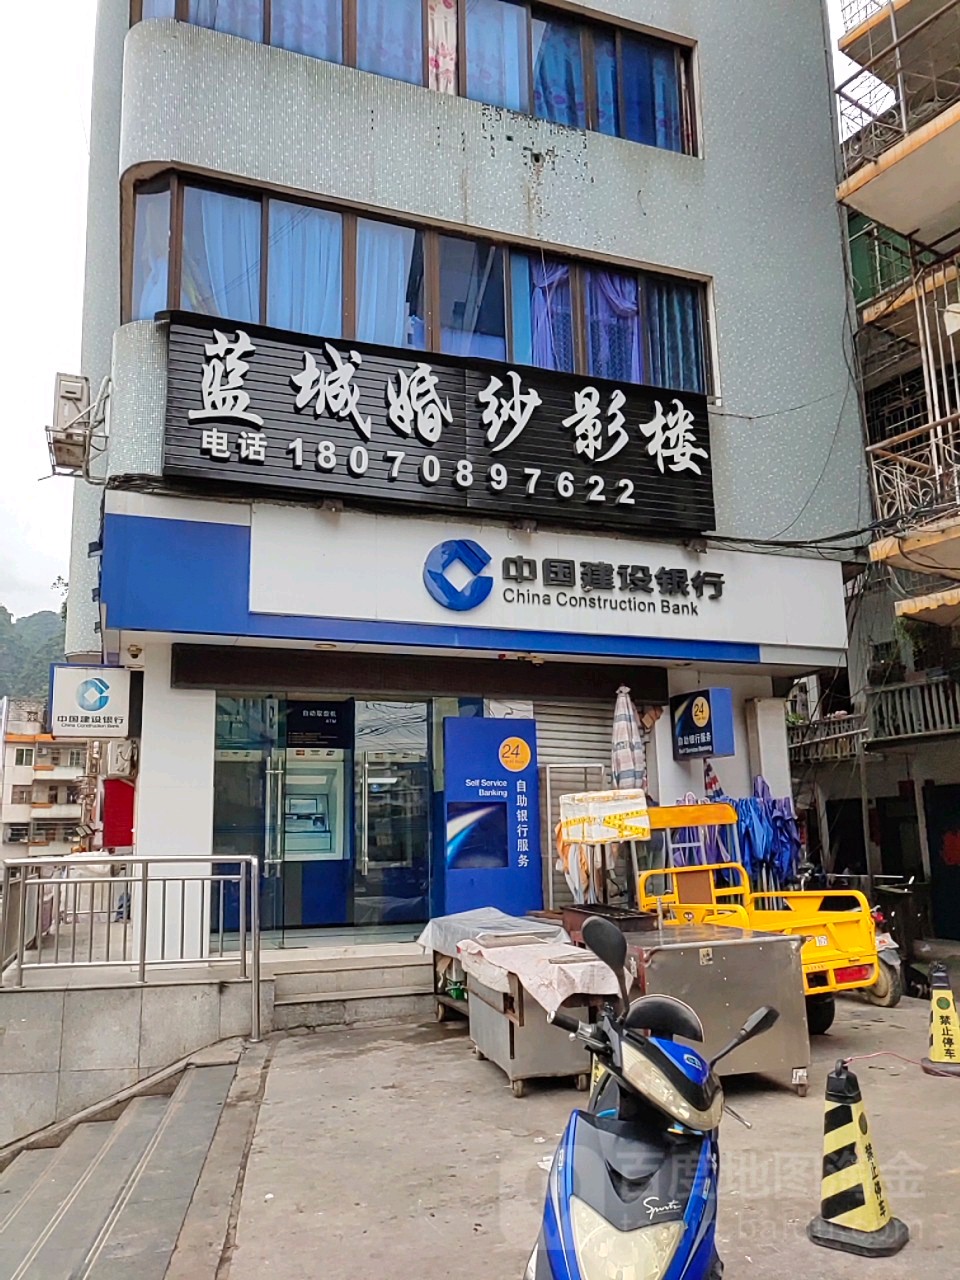 中國建設銀行24小時自助銀行(河濱路)